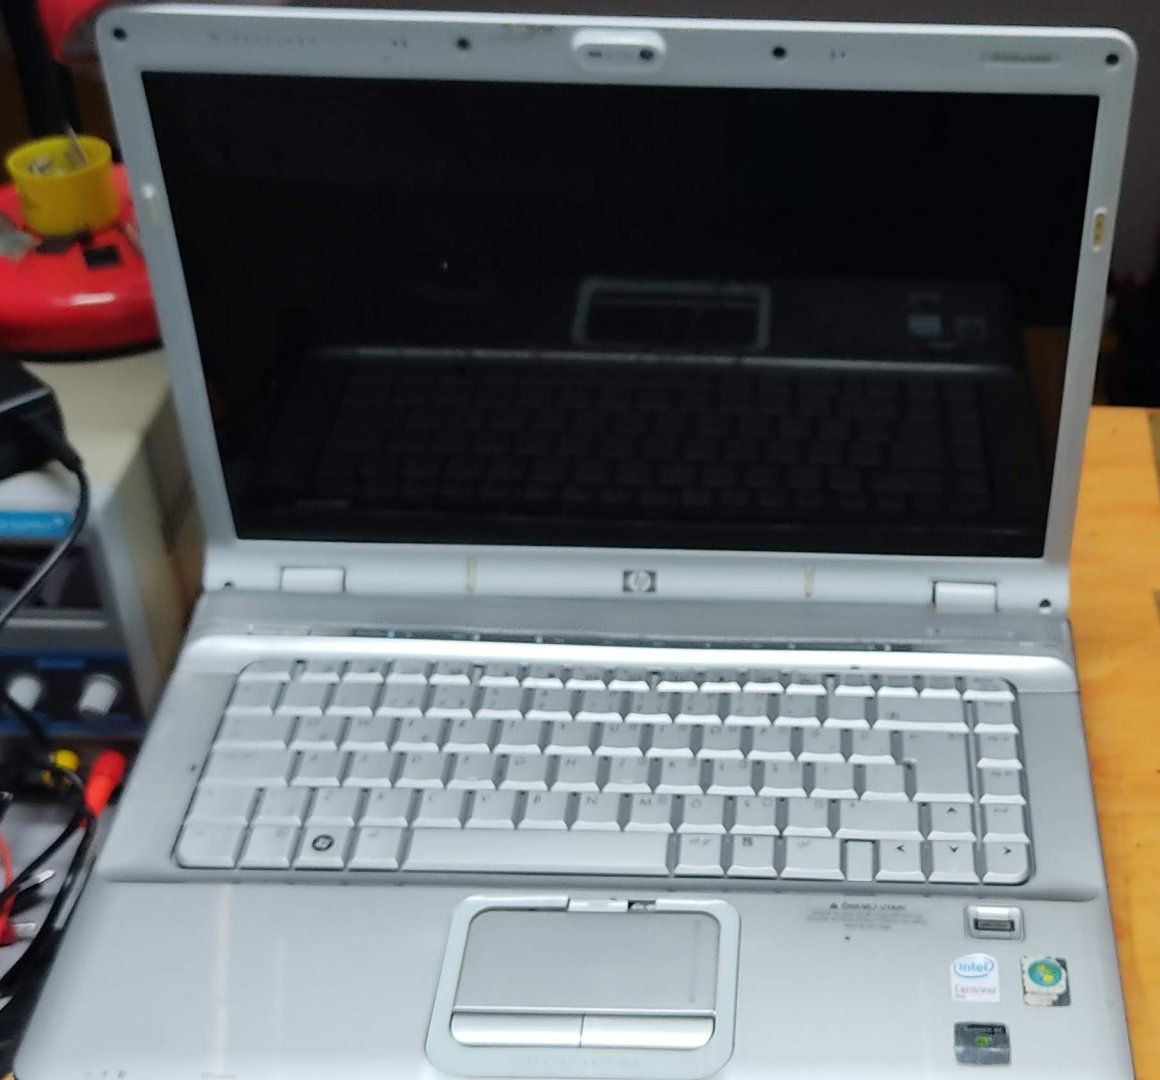 Rehber: HP DV6000 laptop açılıp-kapanıyor (kronik arıza) laptop tamiri! |  Technopat Sosyal